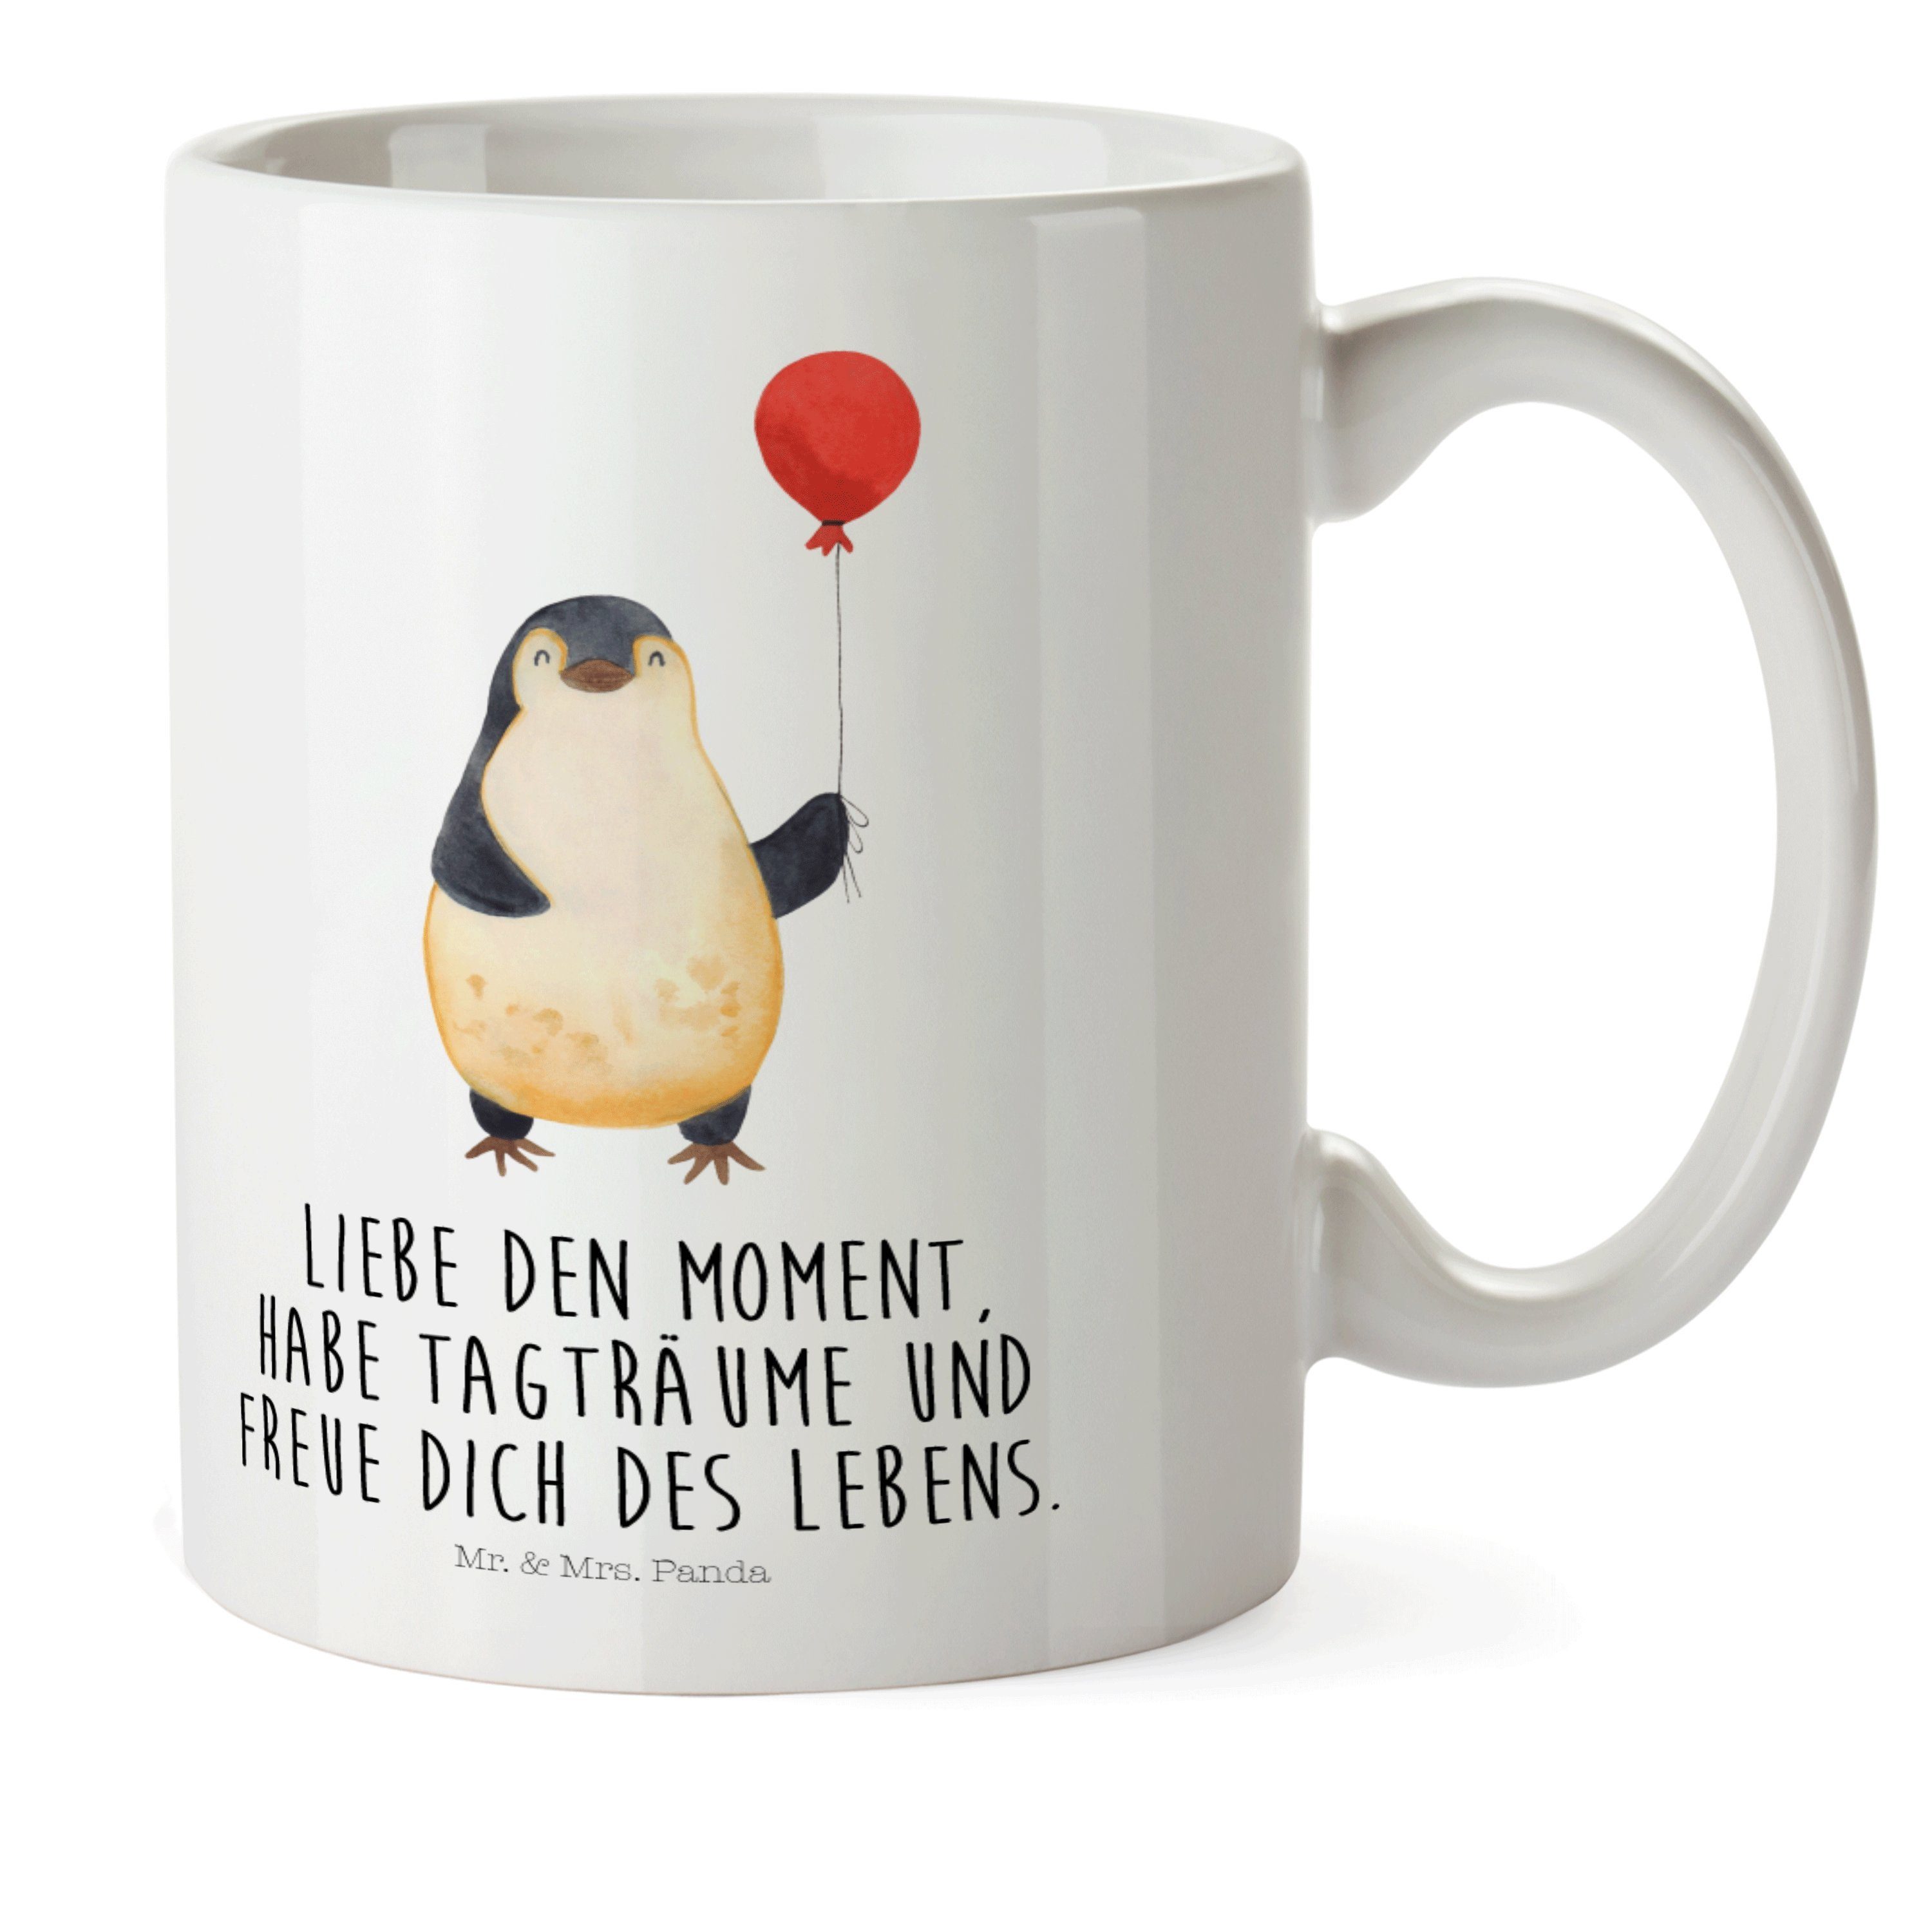 Mr. & Mrs. Panda Kinderbecher Pinguin Luftballon - Weiß - Geschenk, Kind, Jahrmarkt, Outdoorgeschir, Kunststoff